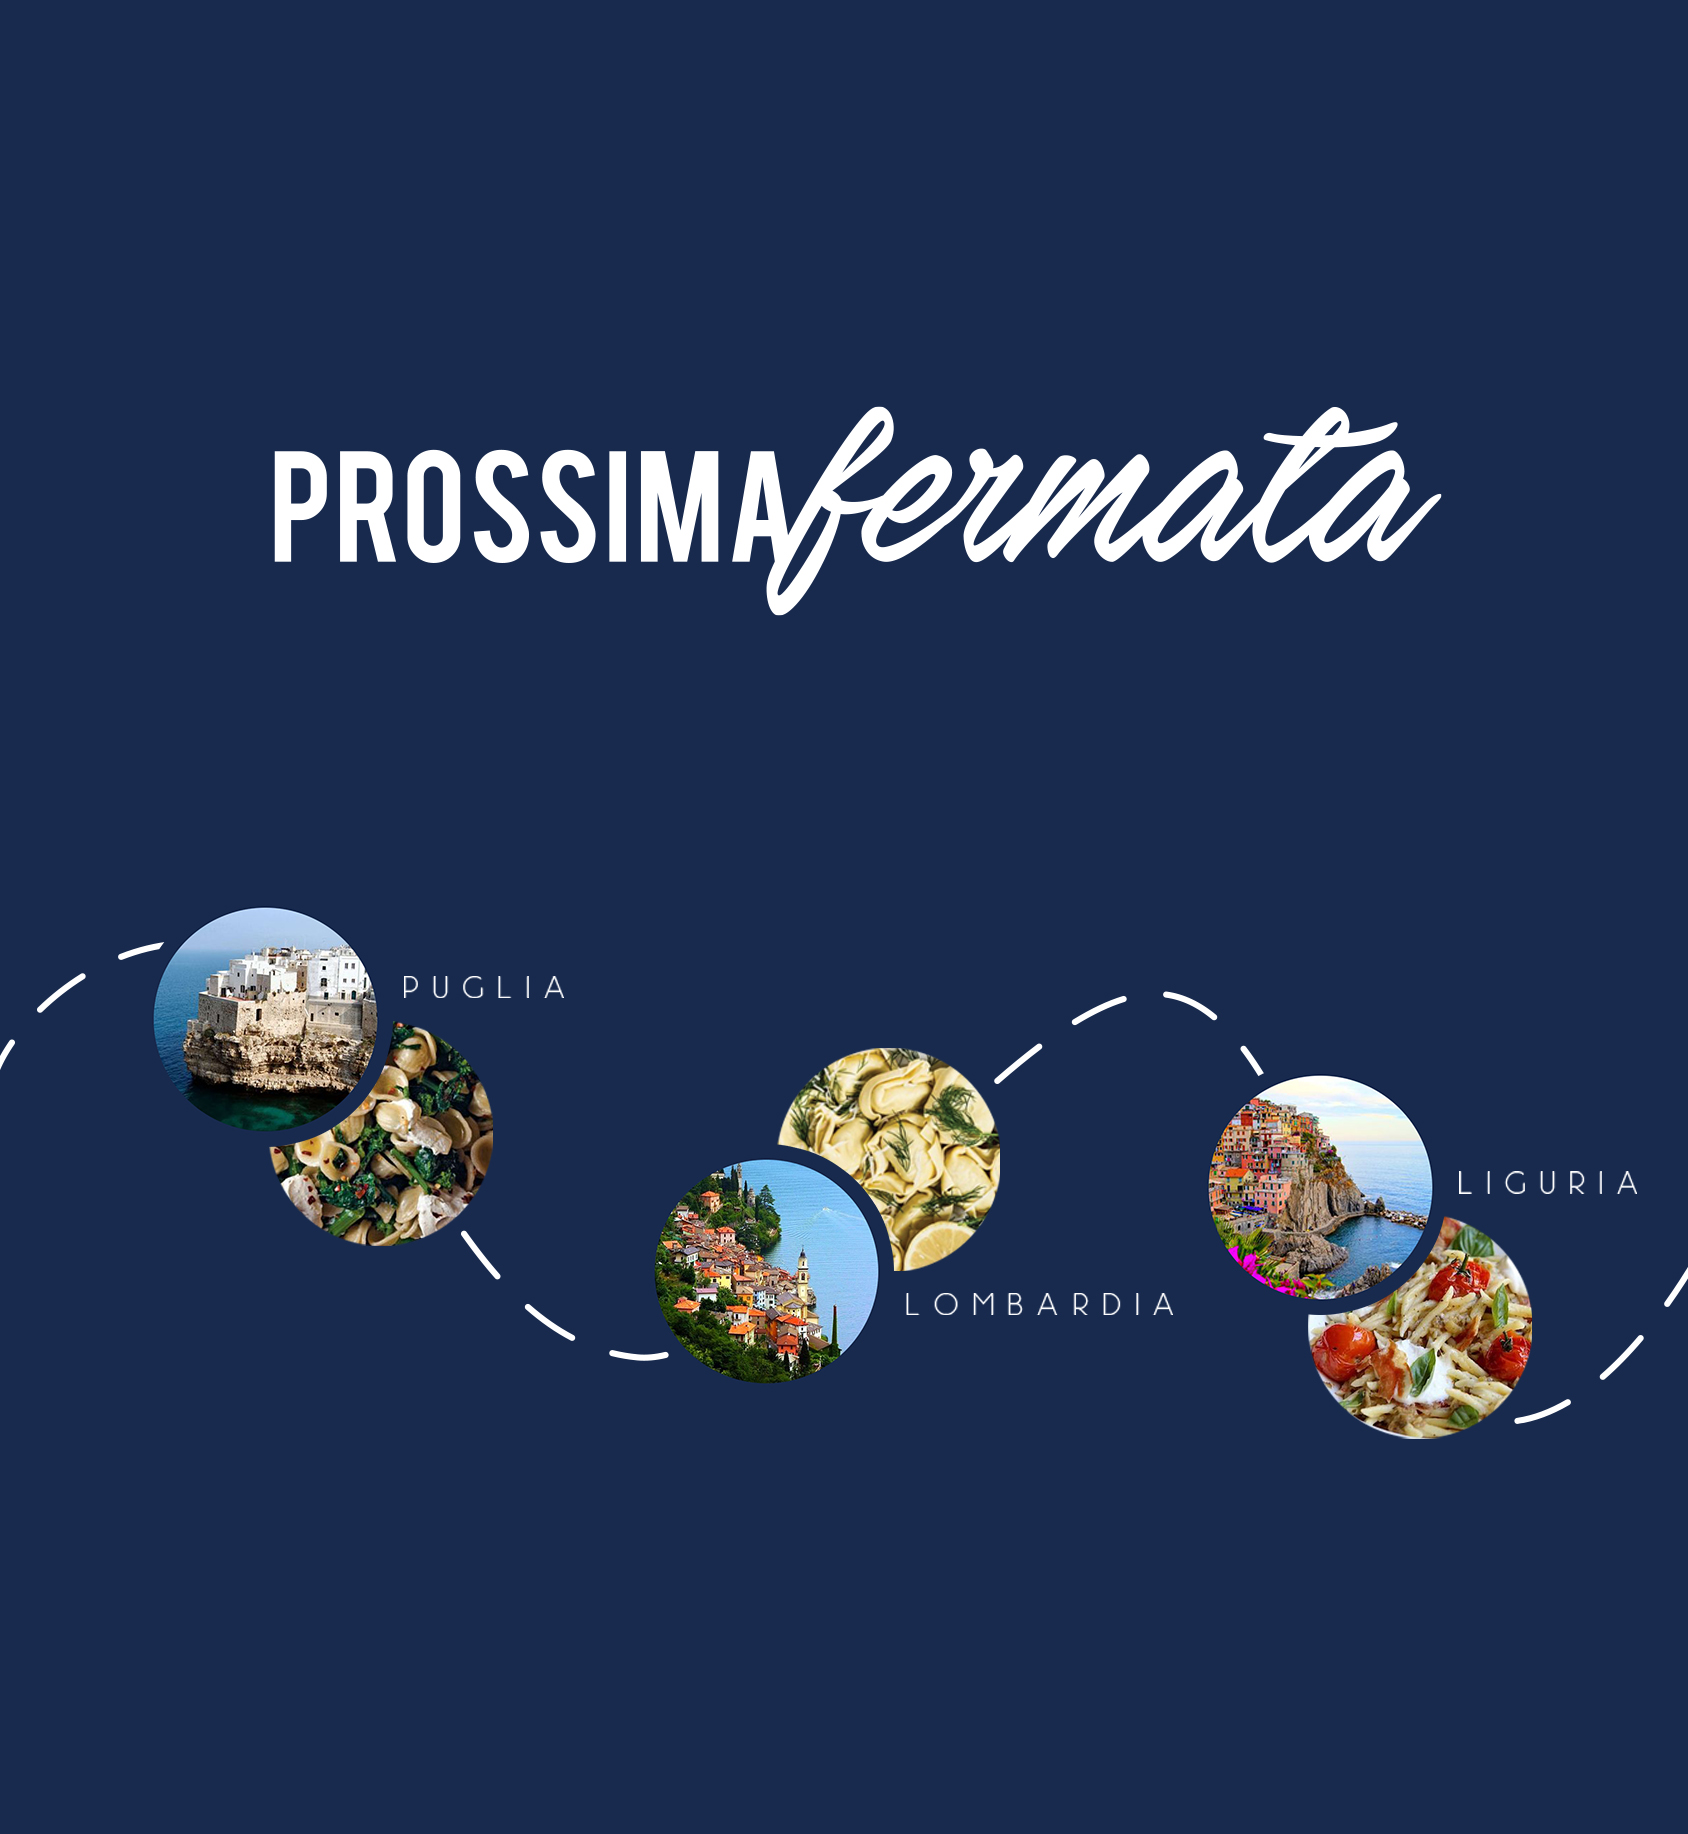 PROSSIMA_FERMATA_project_txt-image2-1